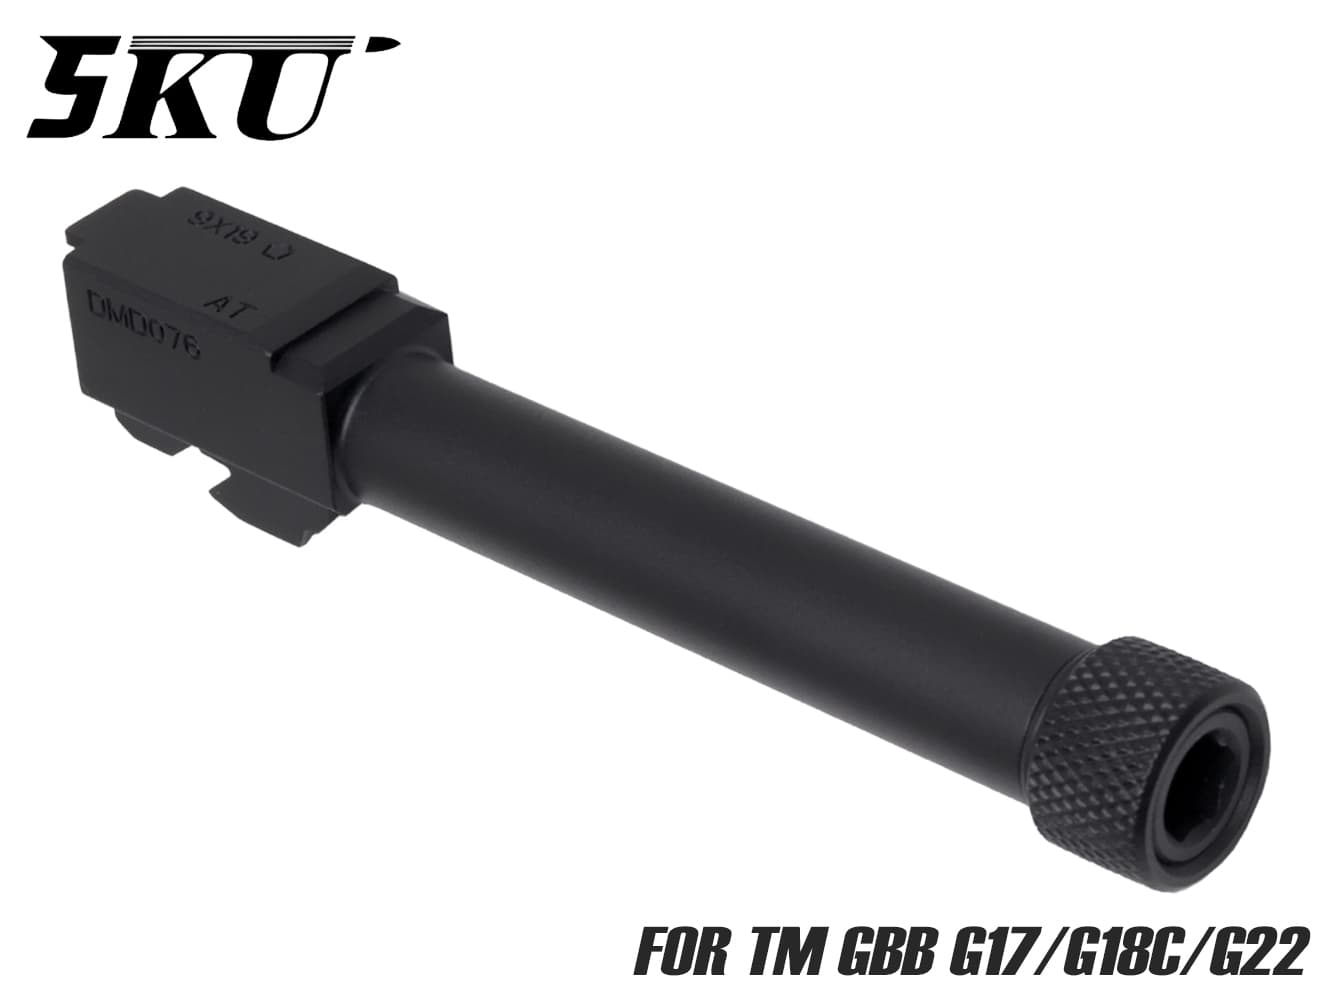 5KU アルミCNC スレッドアウターバレル CCW for TM G17/G18C/G22◆ハンドガン アルミ 合金 CNC カスタム スレッド カバー 14mm 逆ネジ メタル 質感 アップ 精度